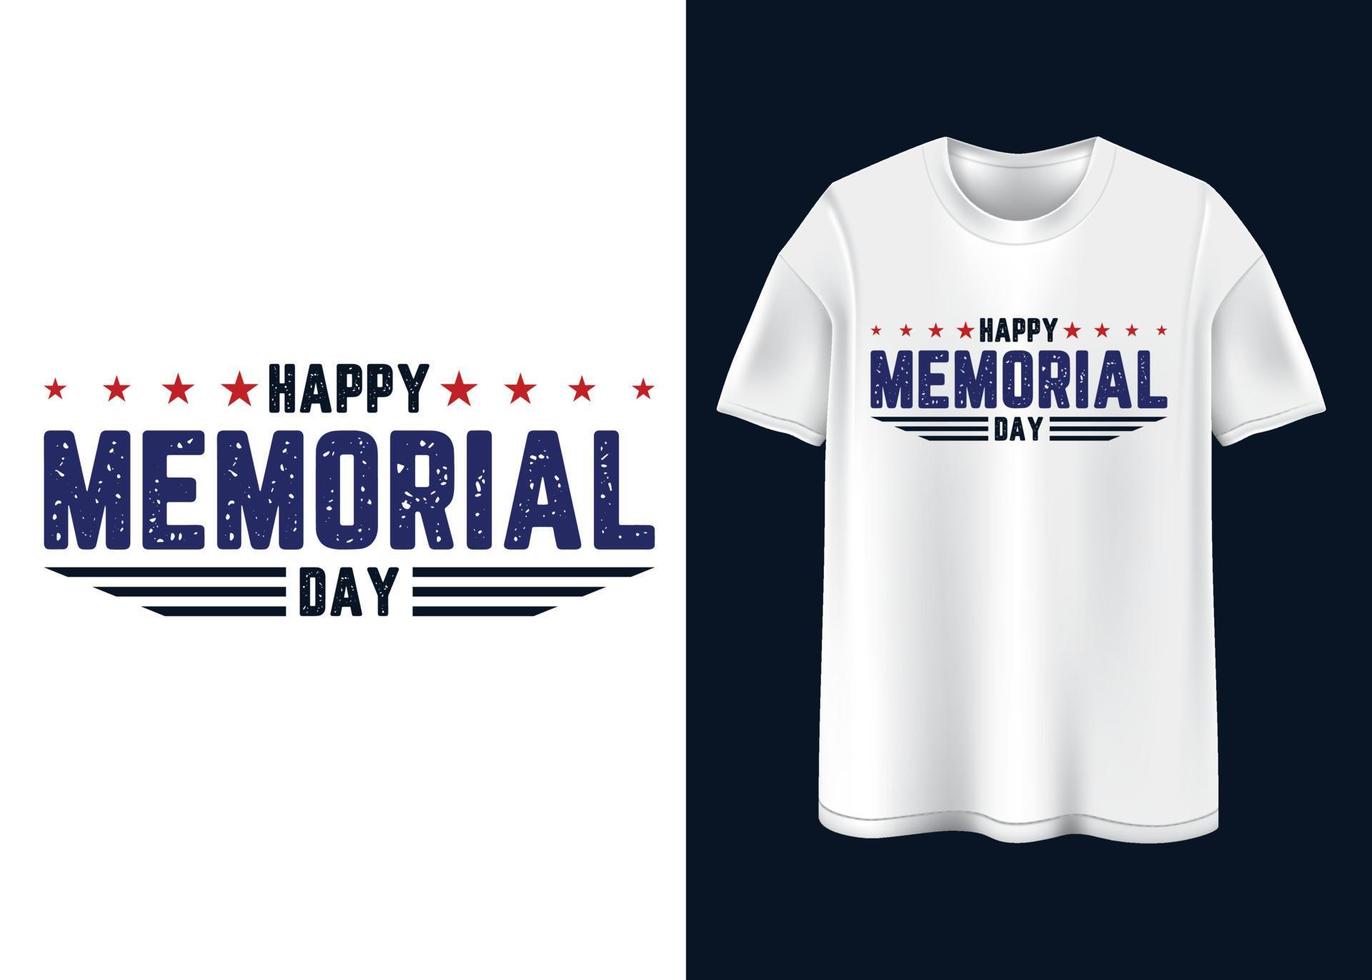 Happy Memorial day Typography T-shirt design vector